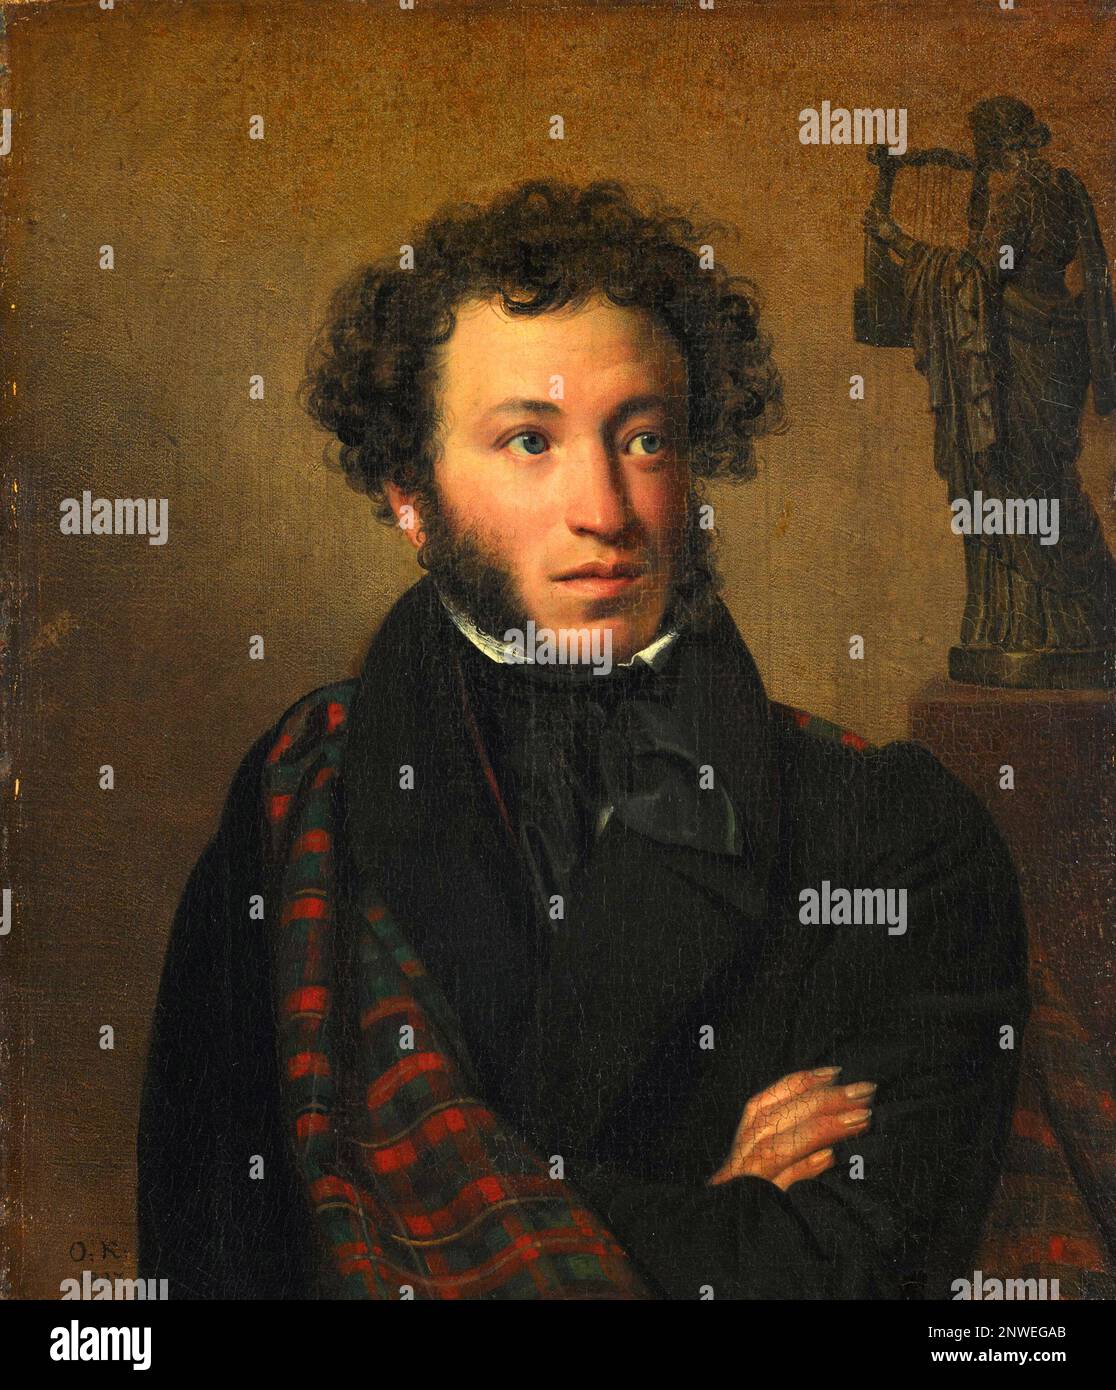 Alexander Puschkin, Alexander Sergejewitsch Puschkin (1799-1837), russischer Dichter, Dramatiker und Schriftsteller. Porträt von Orest Kiprensky, 1827 Stockfoto